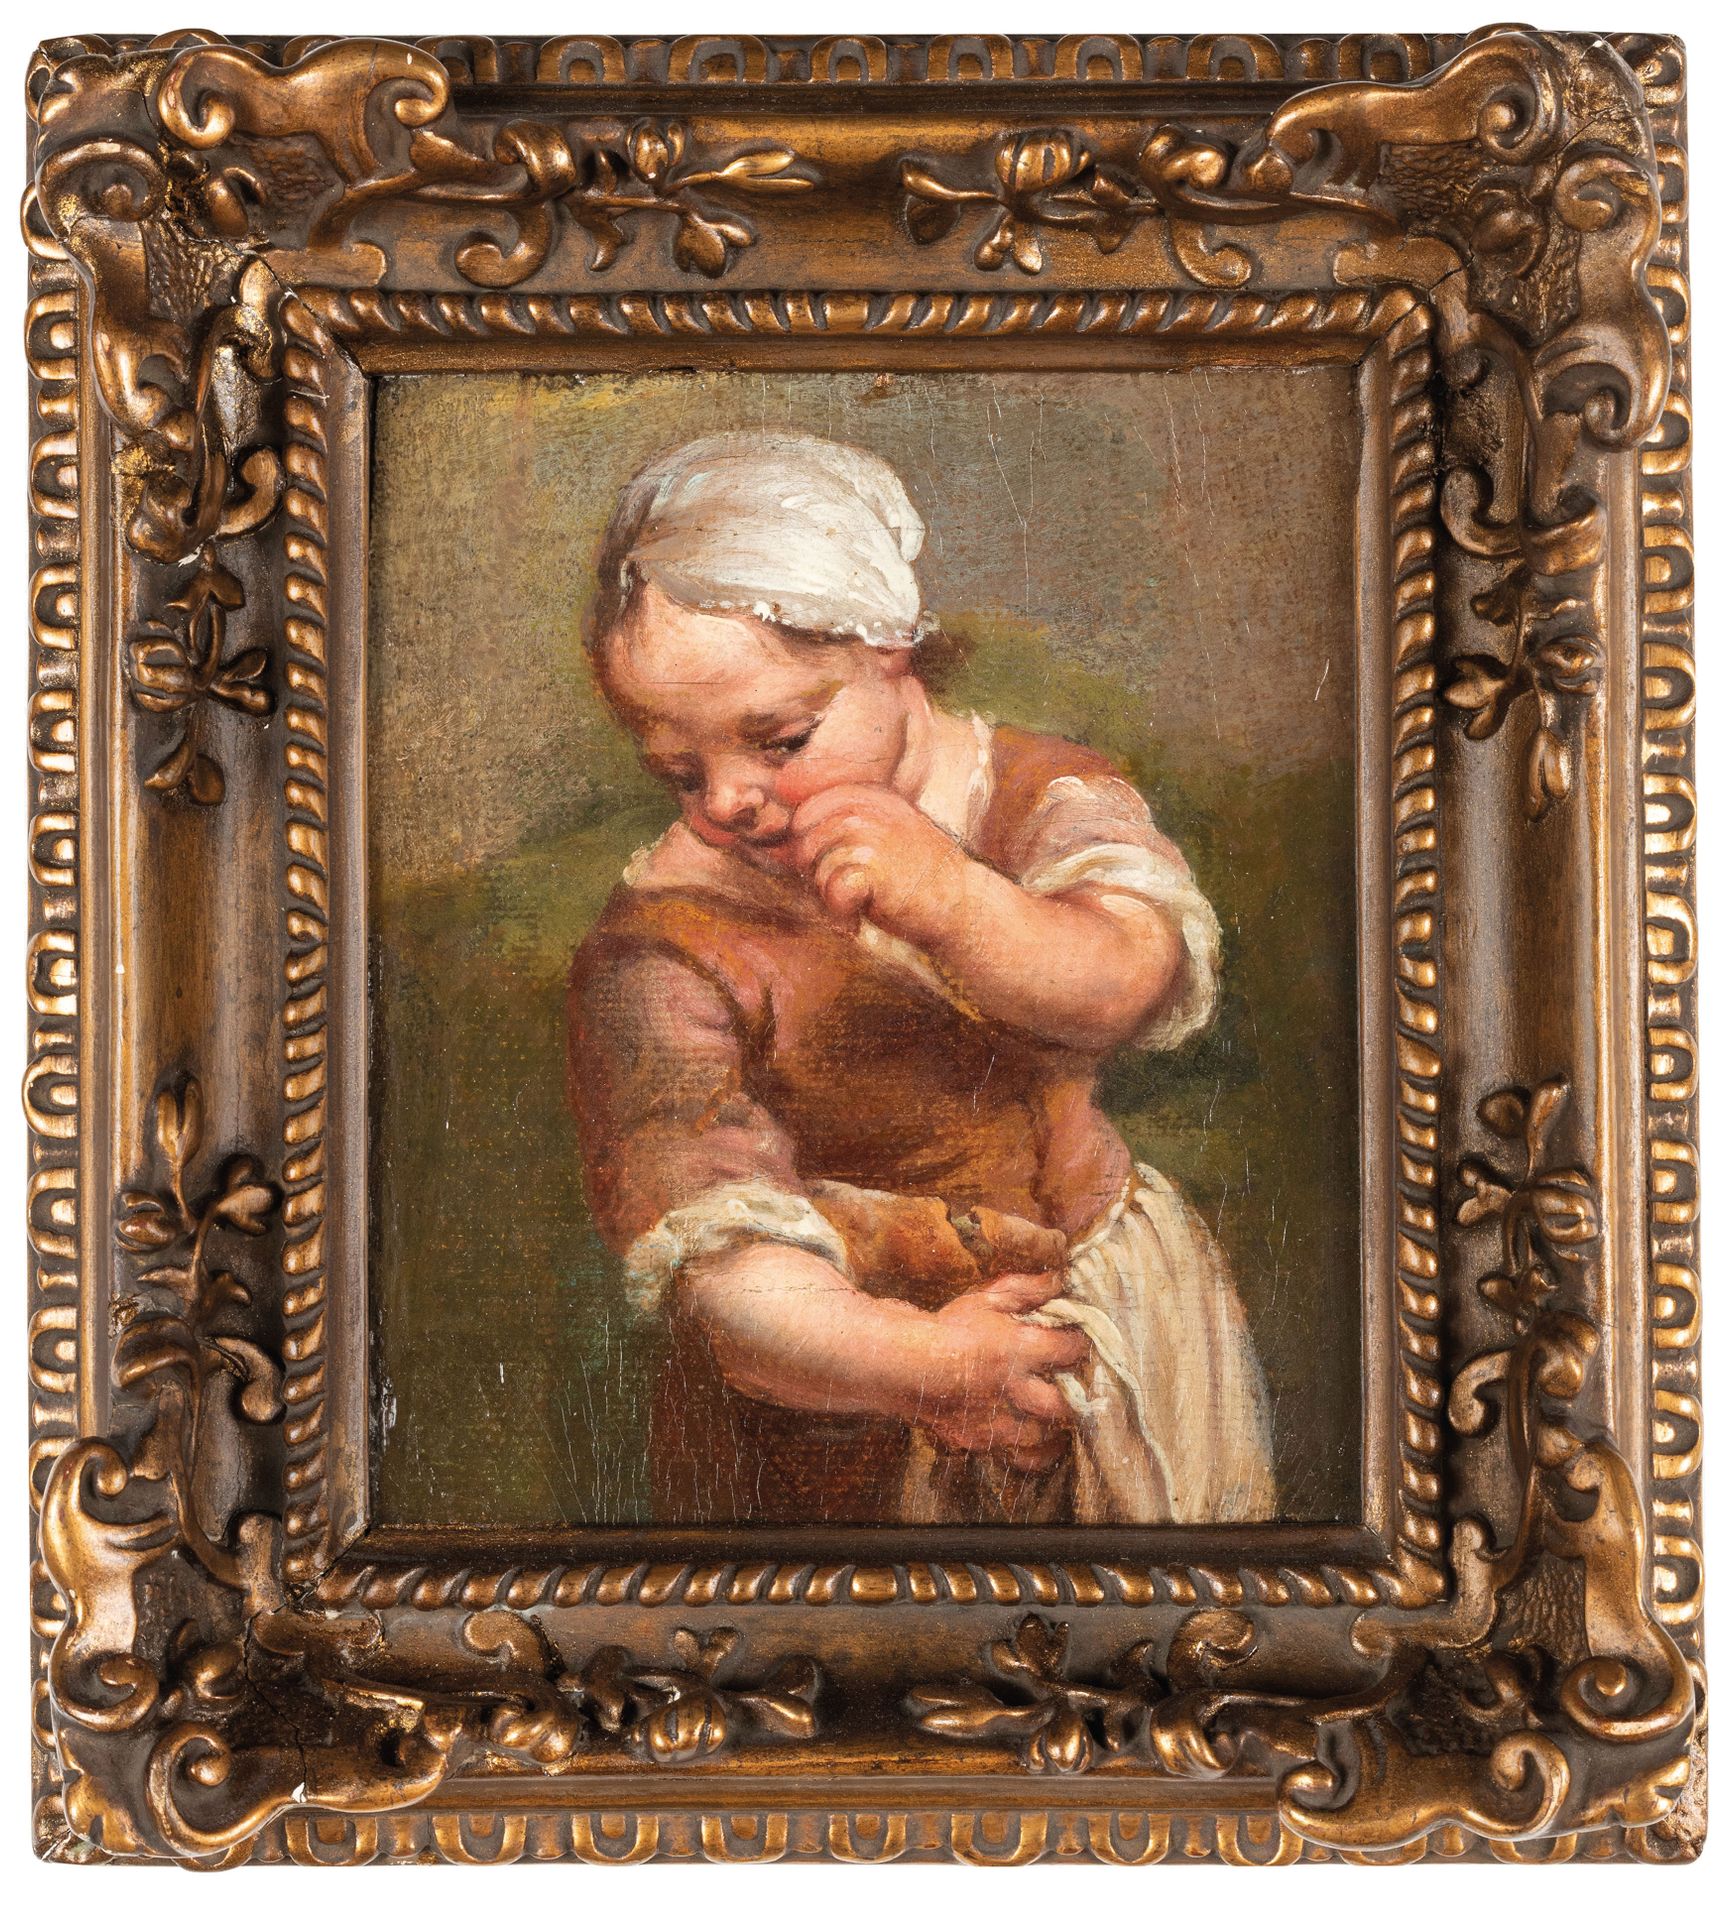 GIUSEPPE MARIA CRESPI (maniera di) (Bologna, 1665 - 1747)
Bambina
粘在画板上的油画，16.5X&hellip;